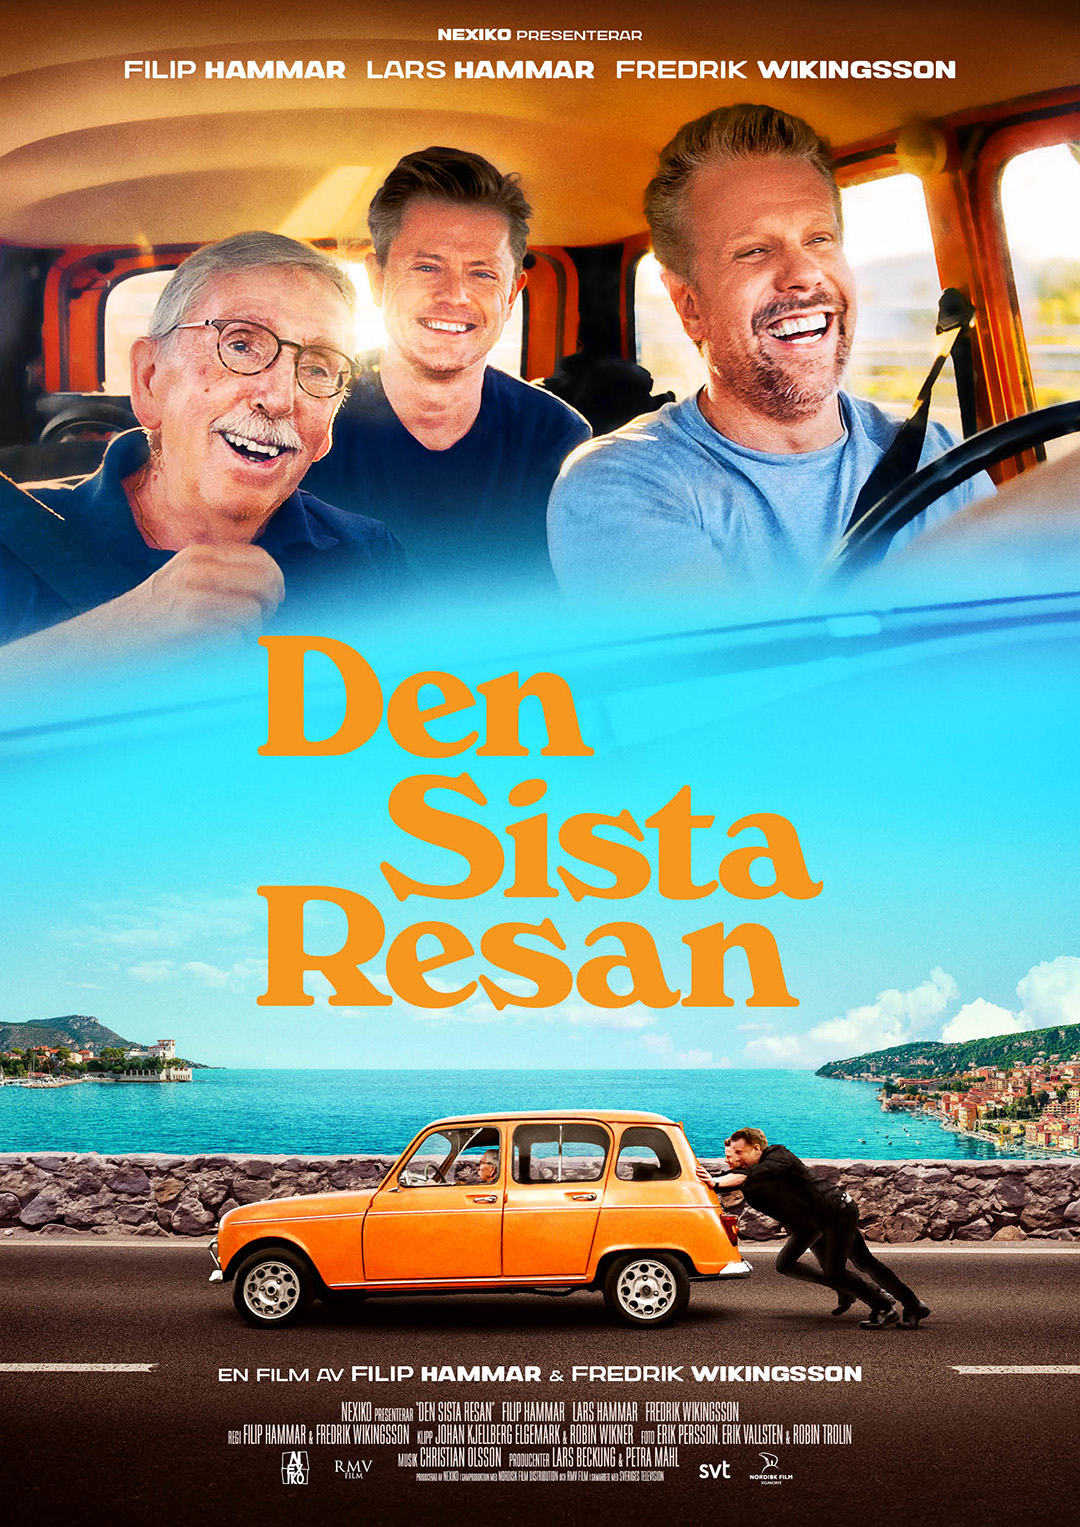 Fredrik, Filip och Lars Hammar sitter i en orange Renault och ler. Nedanför: Filip och Fredrik knuffar den oranga Renaulten, i bakgrunden blått hav och blå himmel.